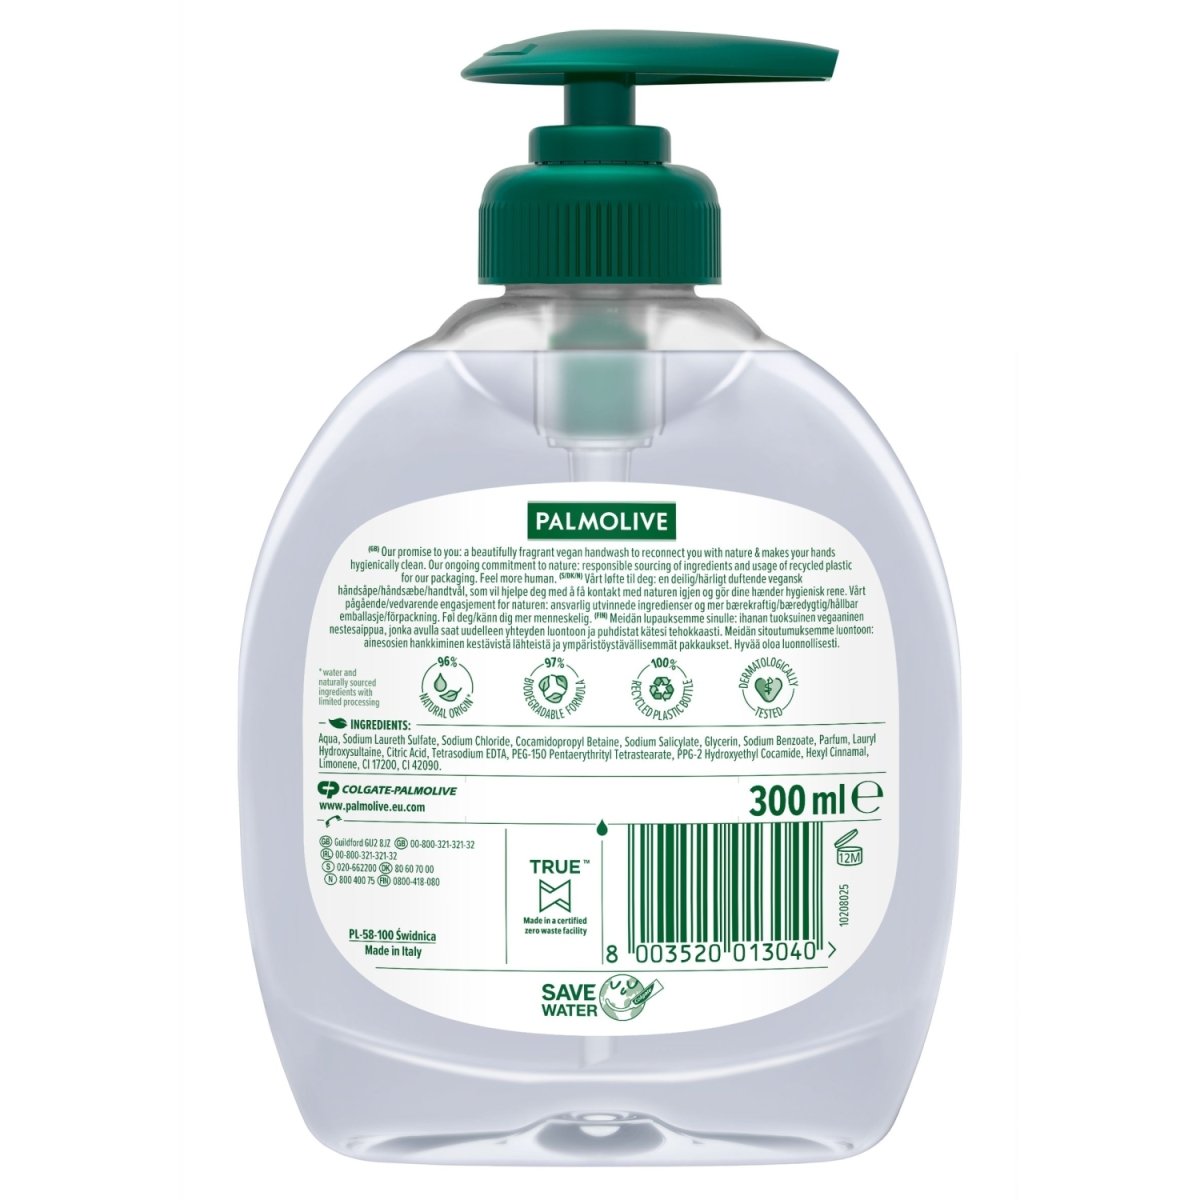 Palmolive Liquid Hand Soap Aquarium - Intamarque 8003520013040